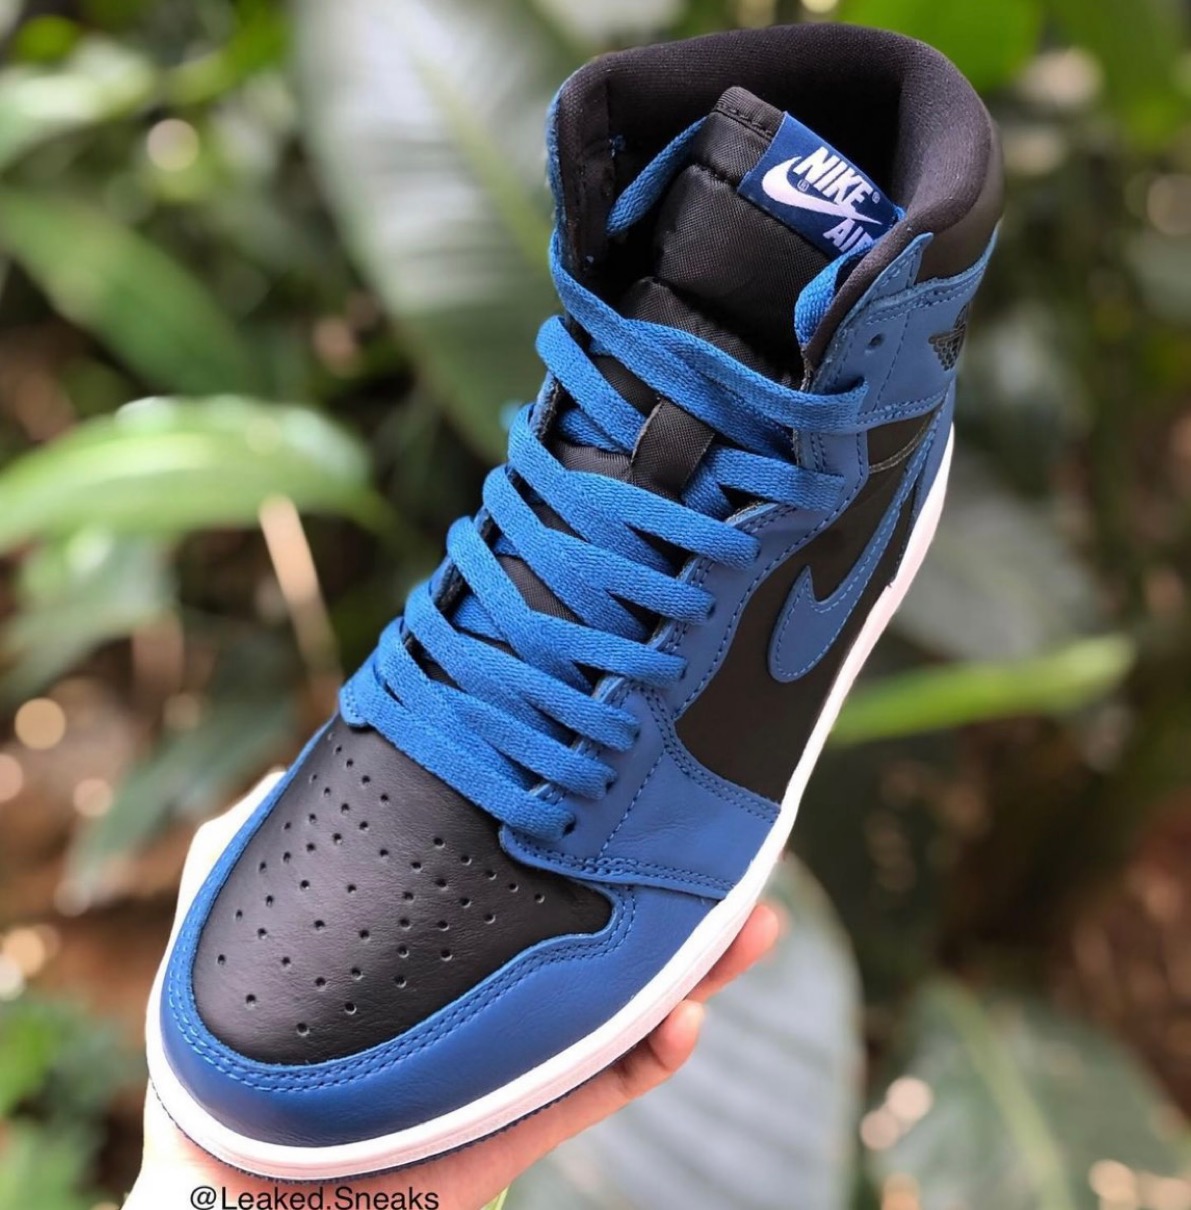 Nike】Air Jordan 1 Retro High OG “Dark Marina Blue”が国内2月5日に ...